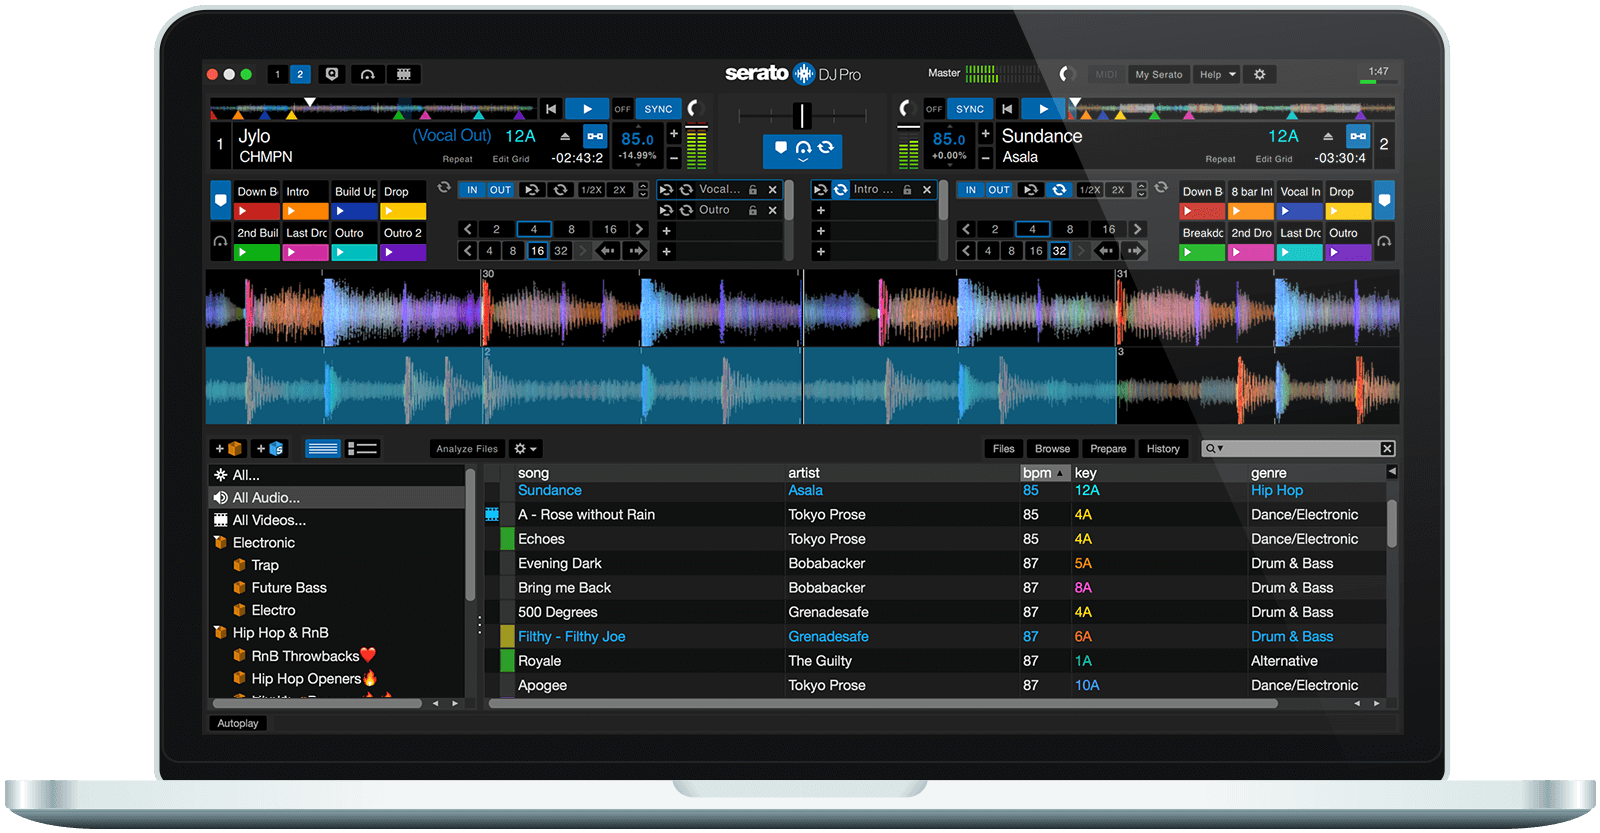 serato dj pro 2.2 for mac free download